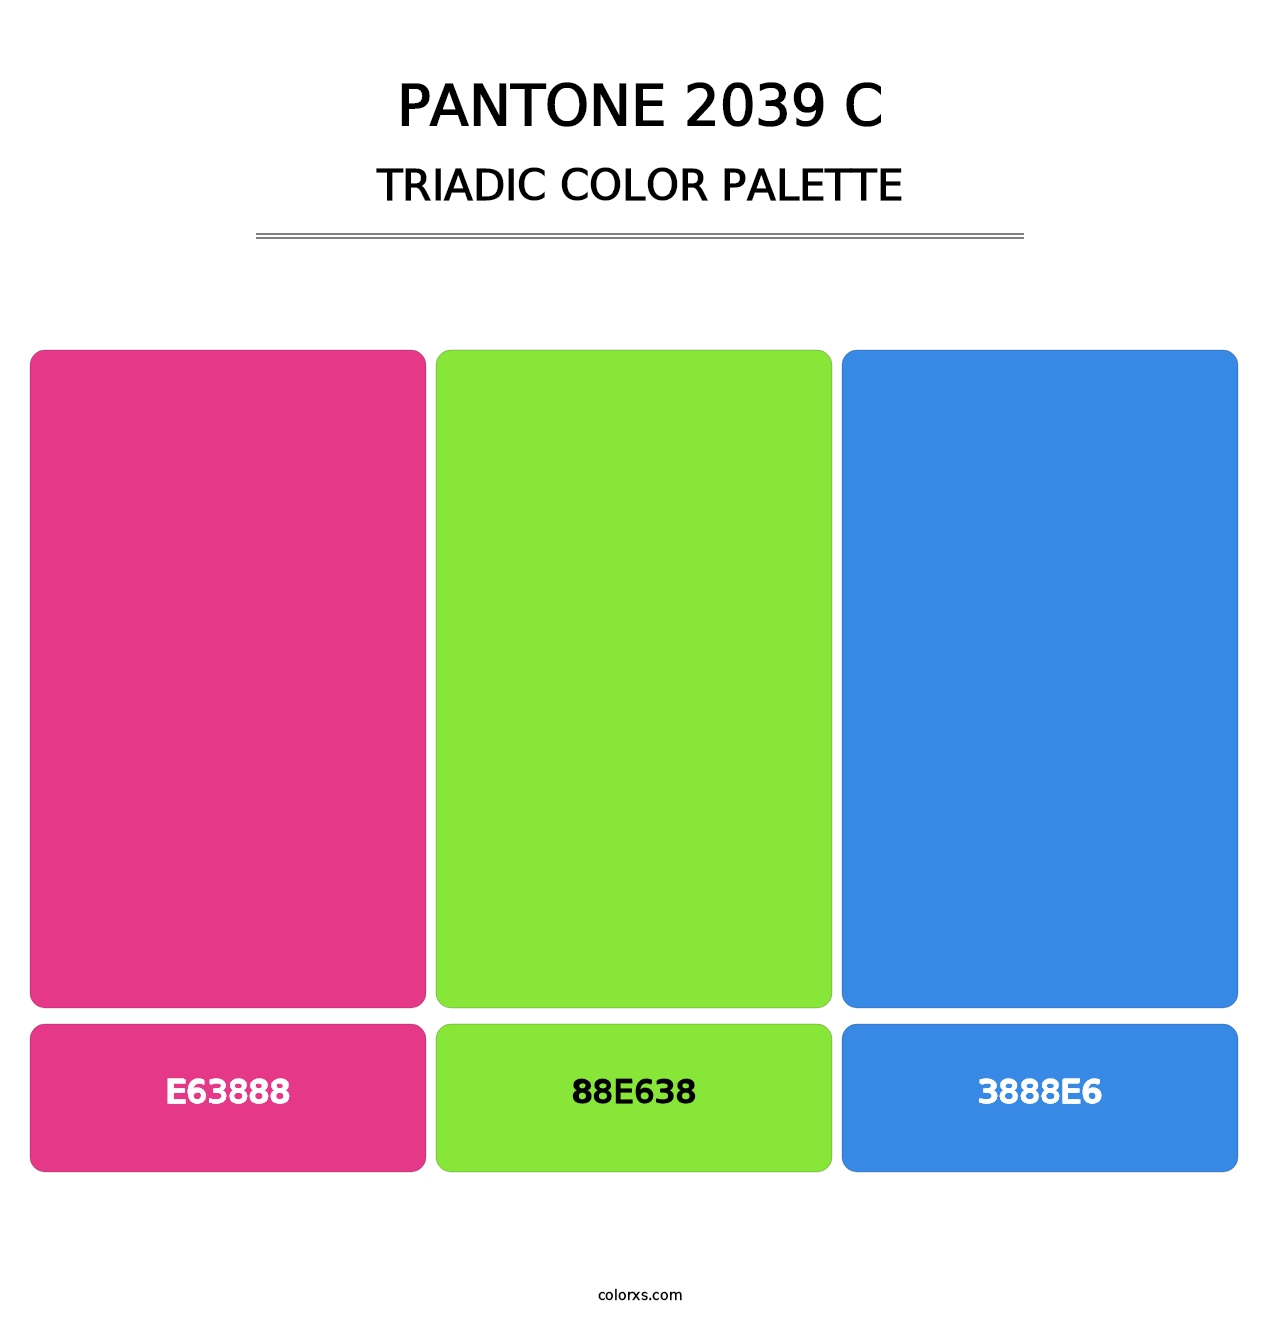 PANTONE 2039 C - Triadic Color Palette